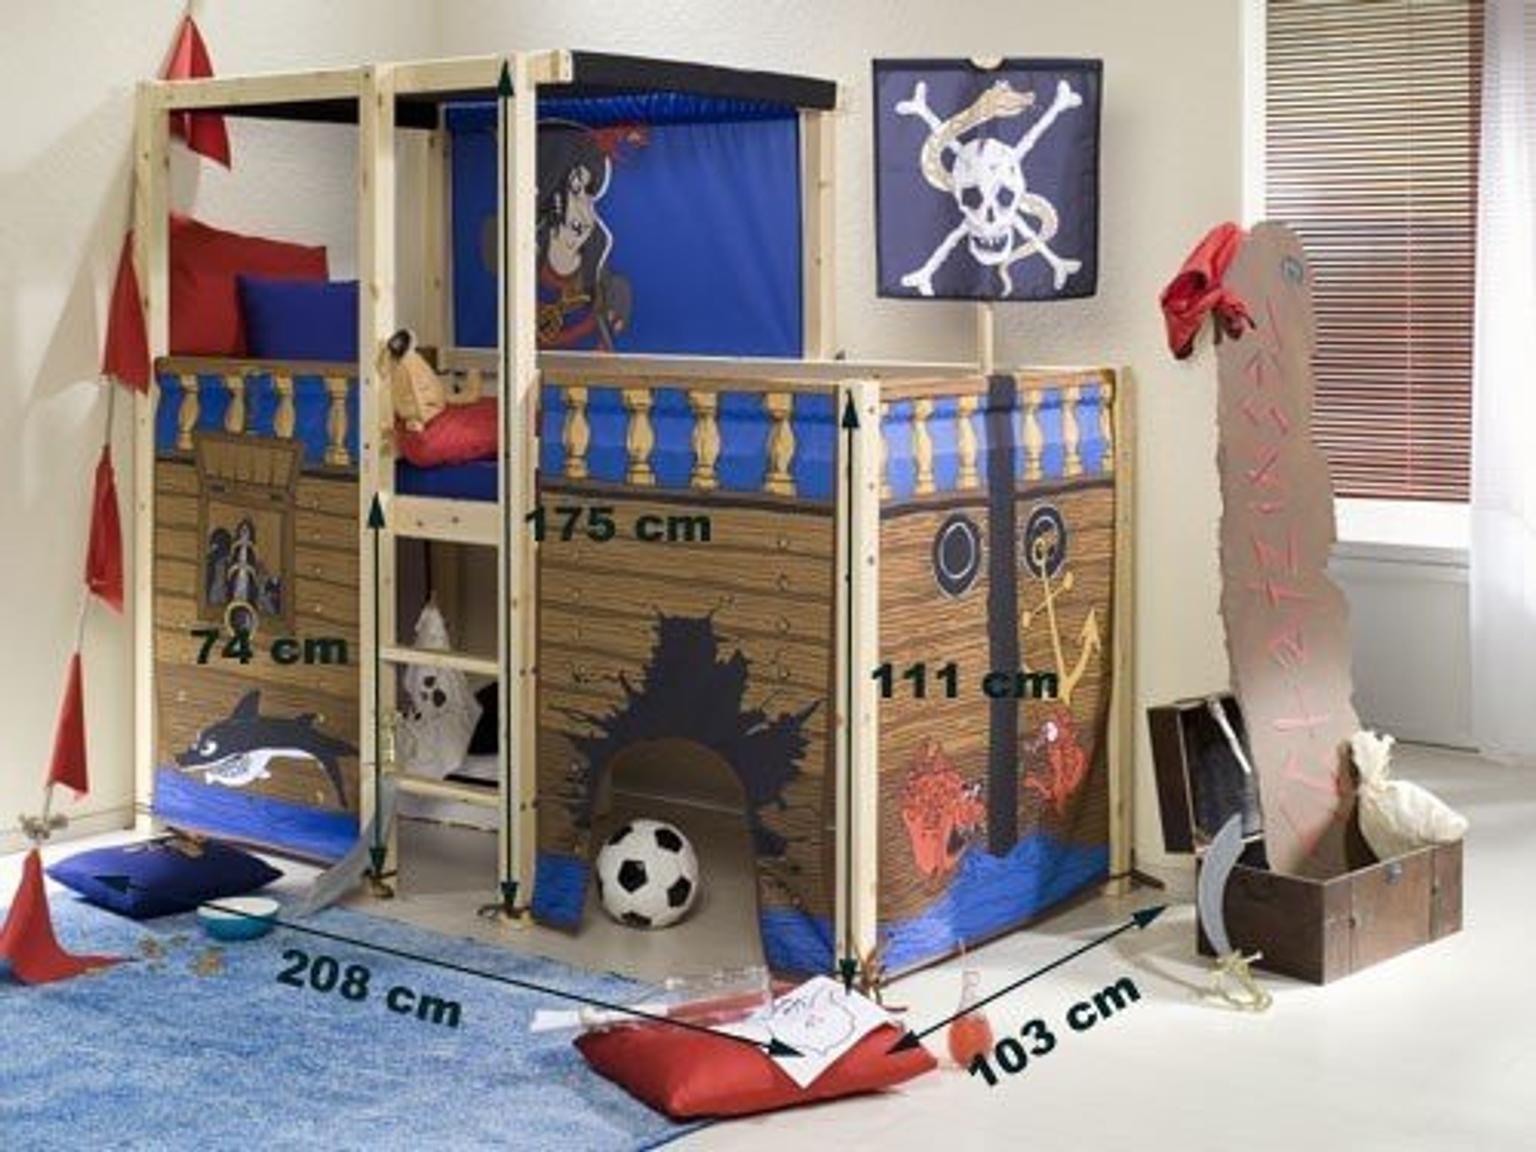 Кровать чердак в пиратском стиле